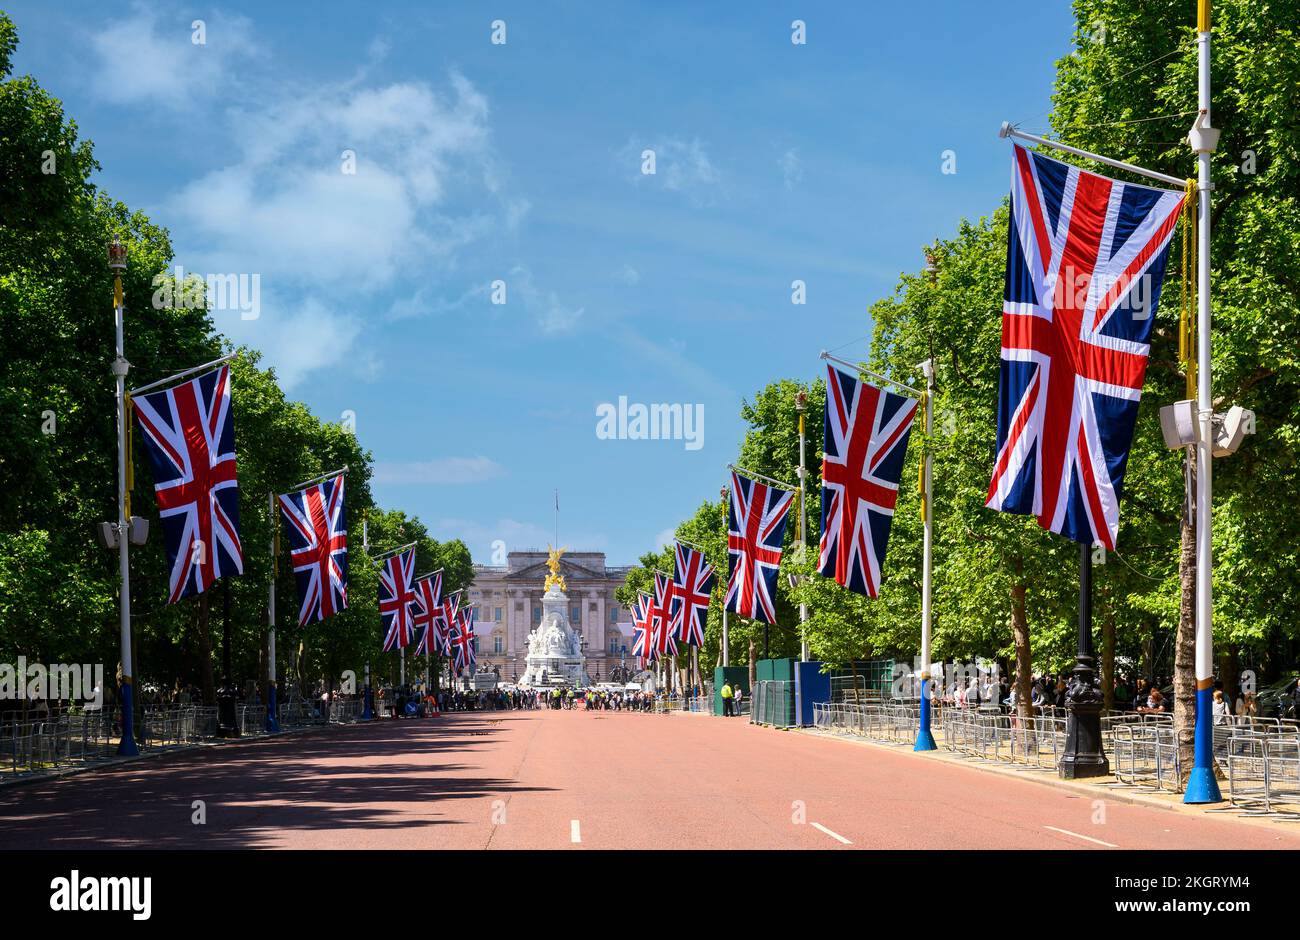 Union-Jack-Flaggen im Einkaufszentrum anlässlich von Queen Elizabeth's Platinum Jubliee, London 2022. Stockfoto